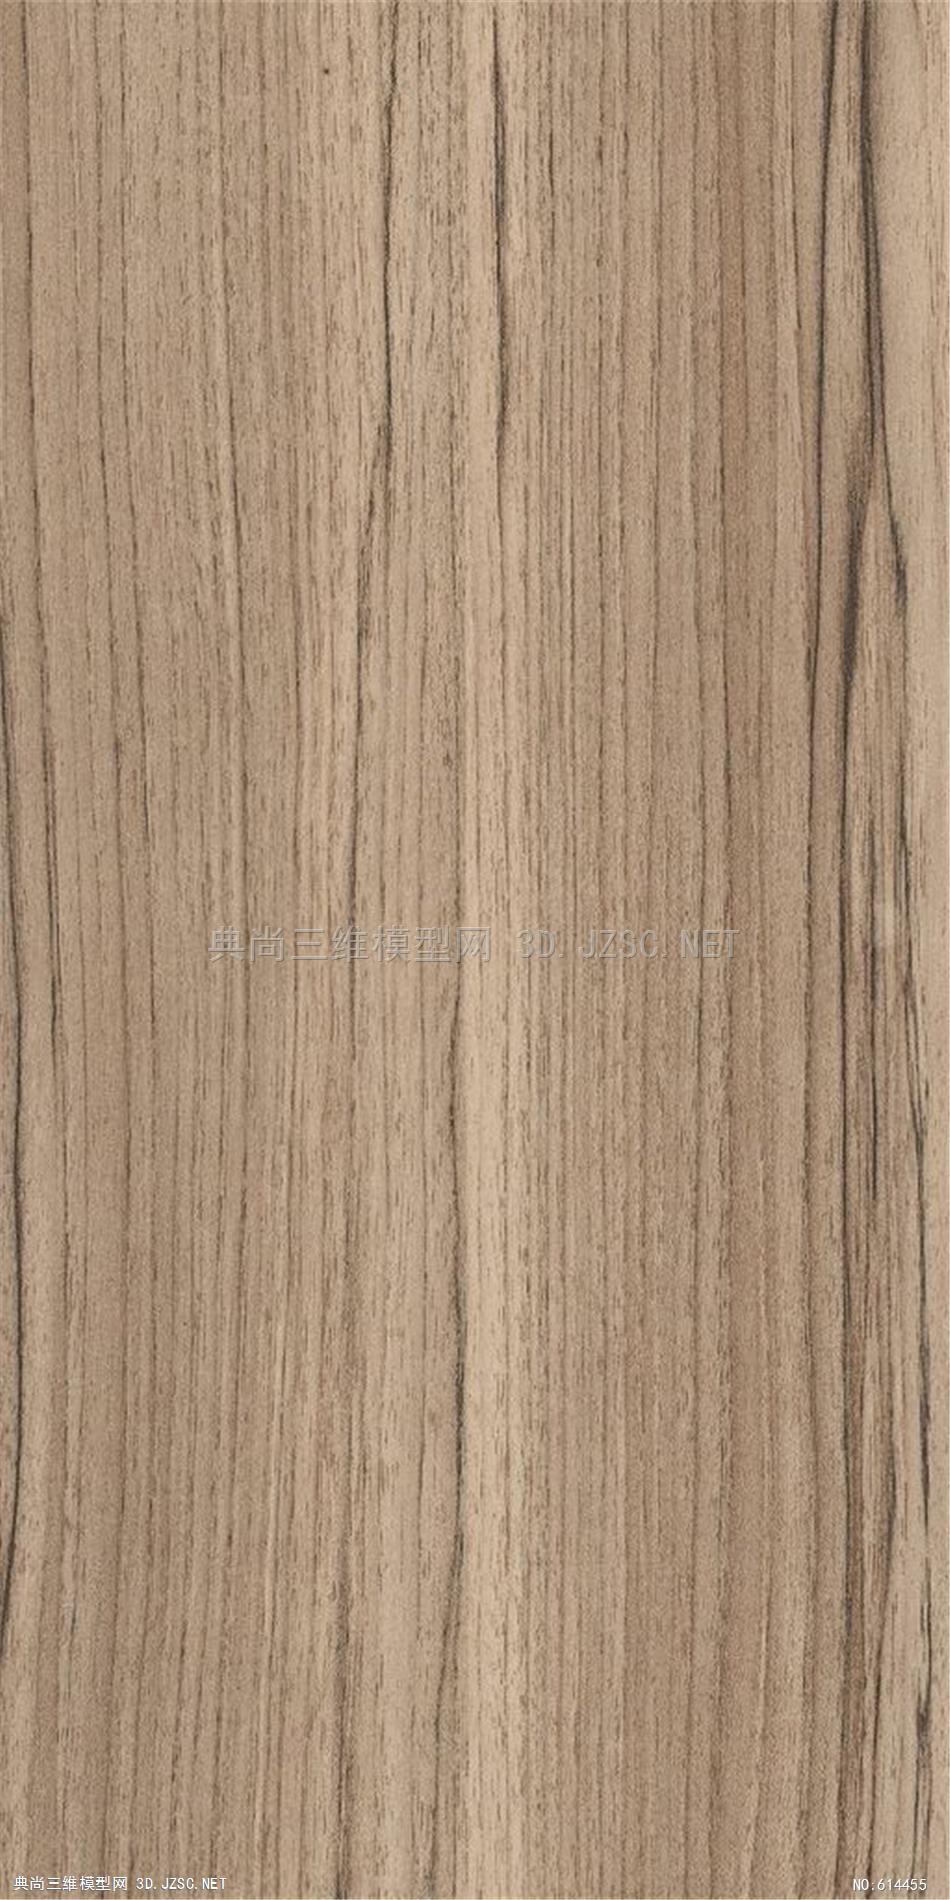 木饰面 木纹 木材  高清材质贴图 (306)